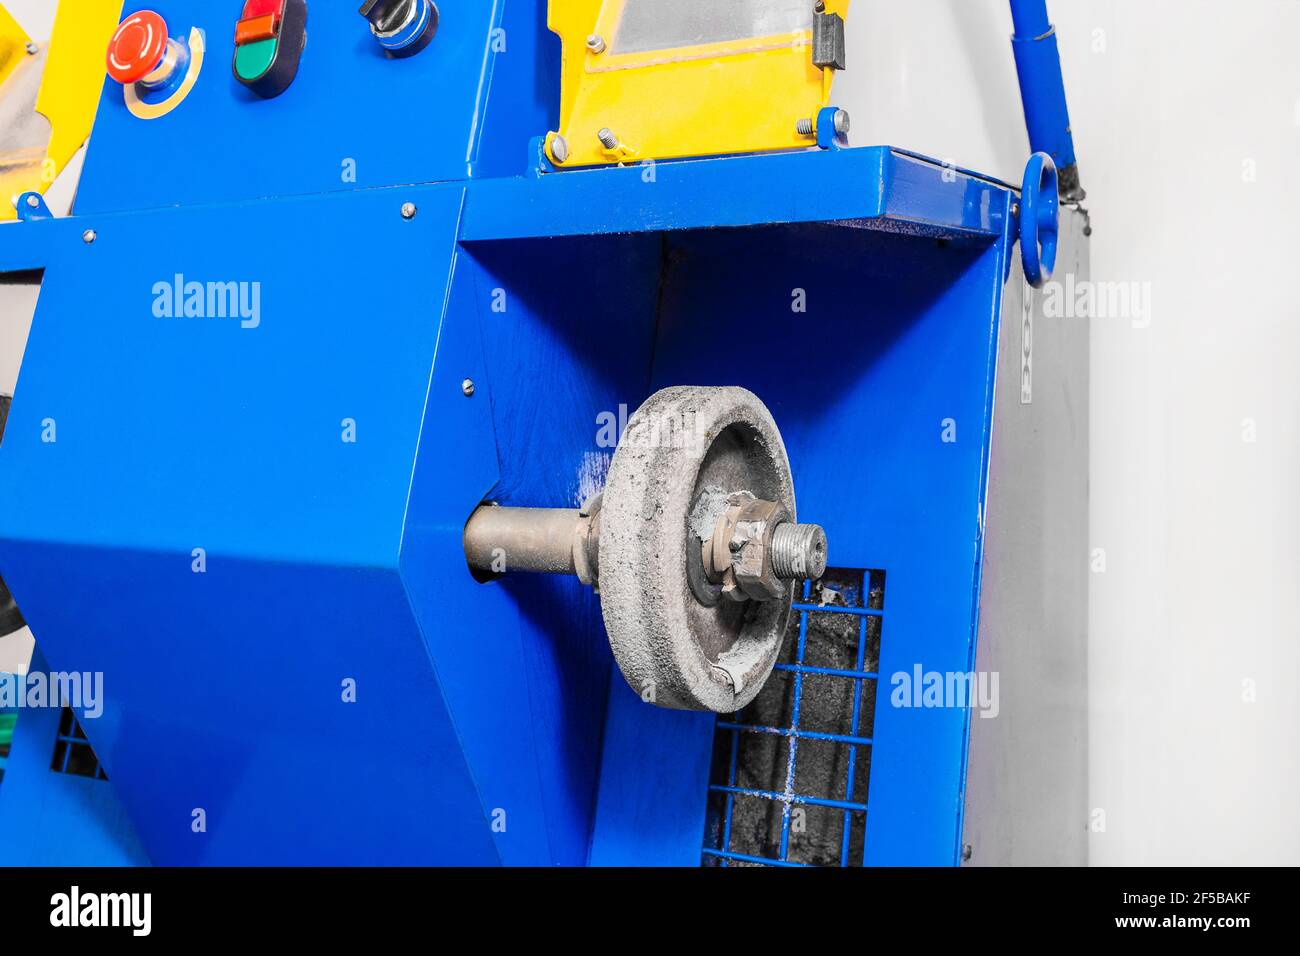 Máquina de molienda con rueda de fieltro para pulir y procesar zapatos en una tienda de zapatos de una empresa industrial. Foto de stock